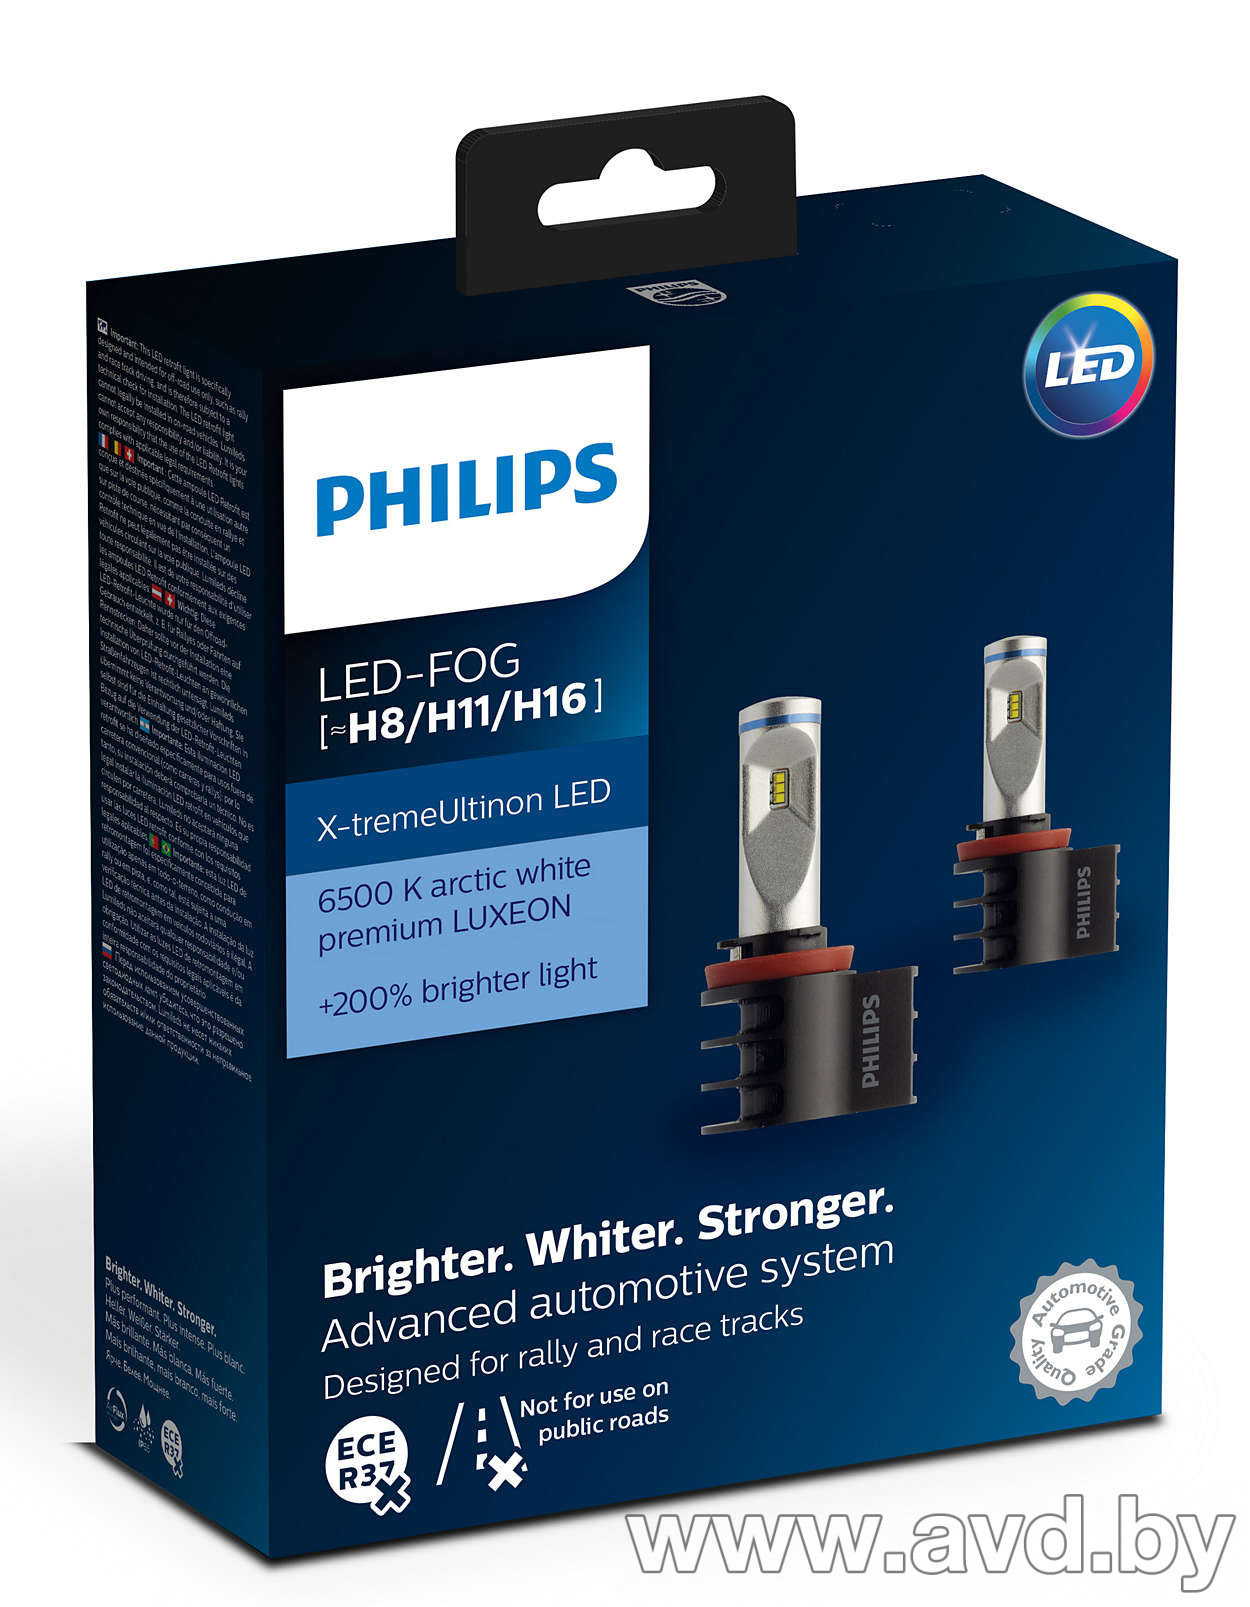 Филипс диодные. Philips led Fog h8/h11/h16. Led лампы Philips x-treme Ultinon h7. Лампа светодиодная Philips h4 x-treme Ultinon led 6500k +200%. Светодиодные лампы h7 Филипс для ближнего света.